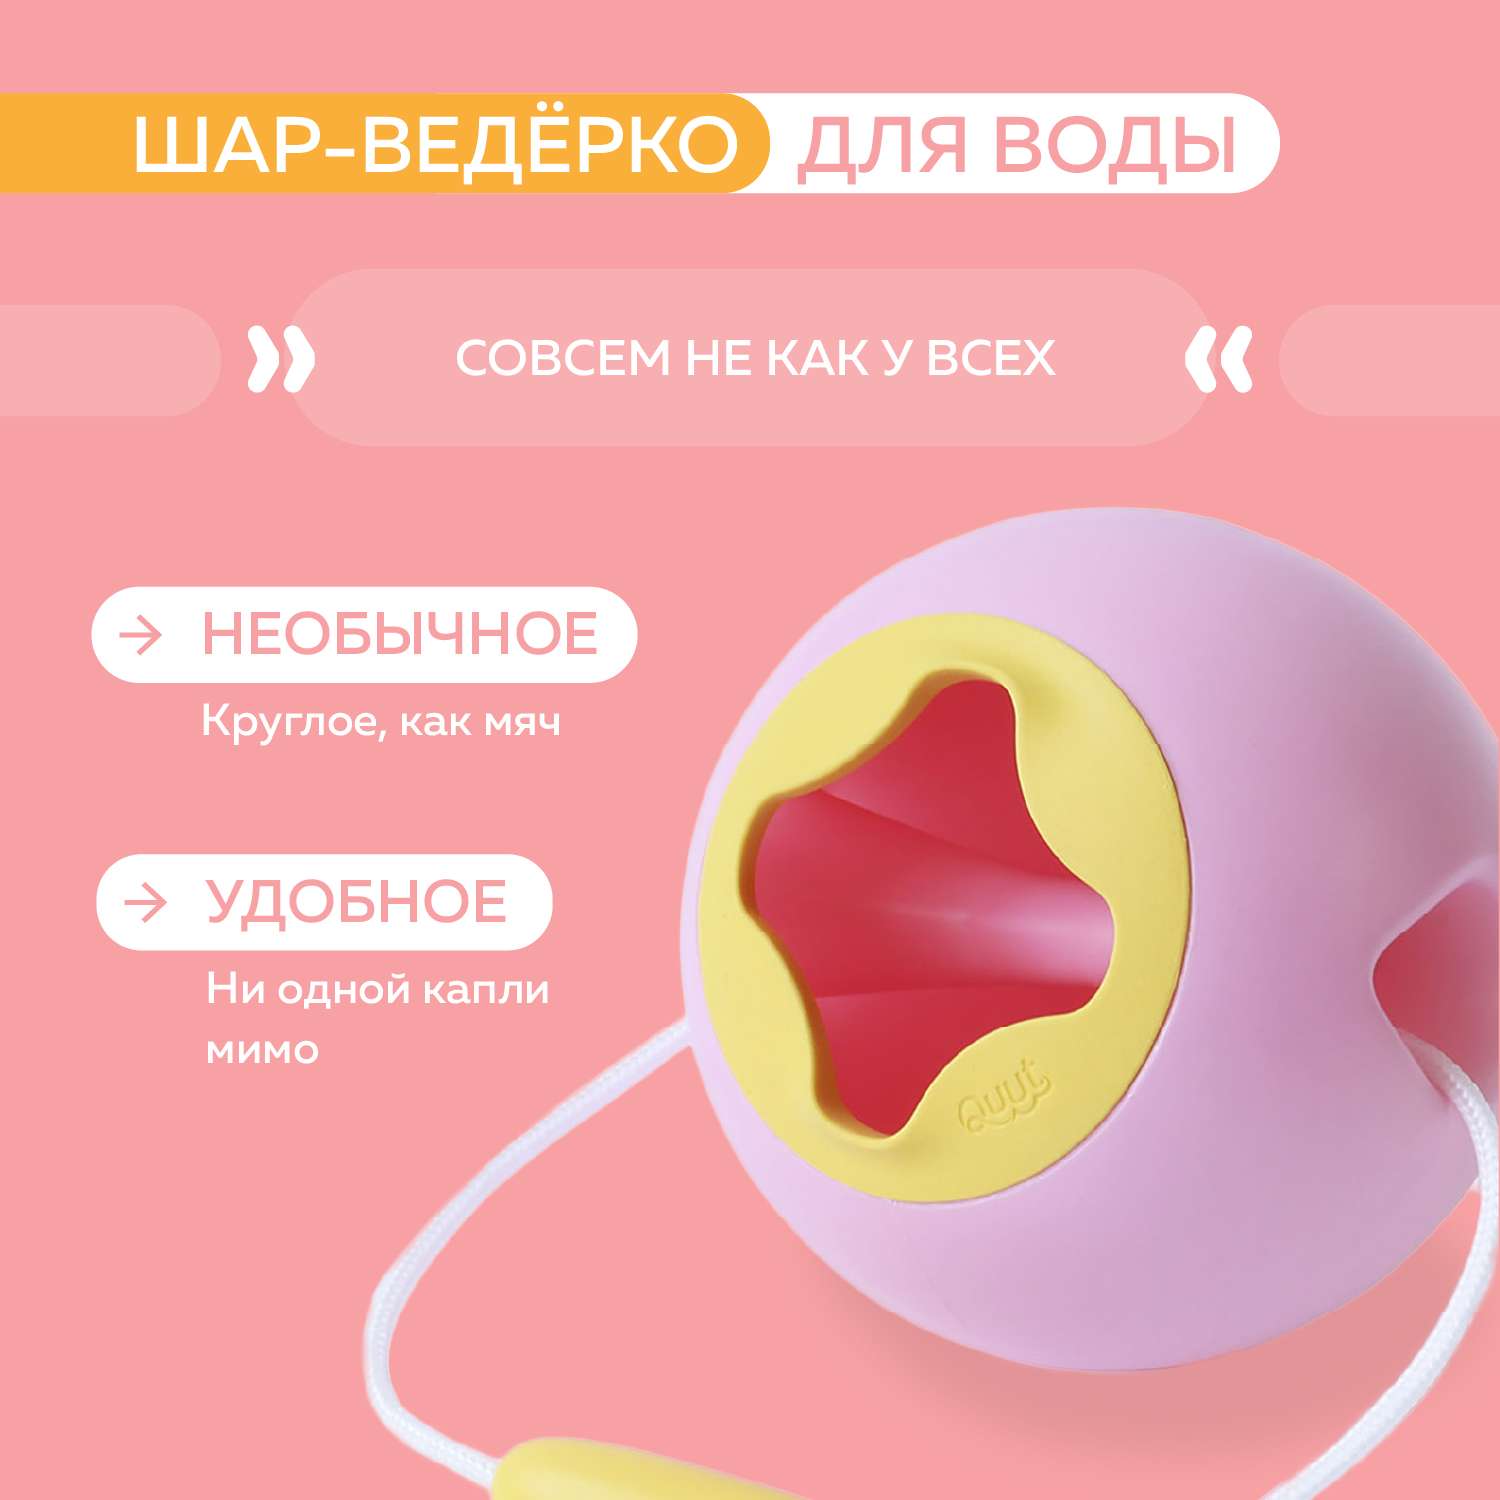 Ведёрко для воды QUUT Mini Ballo Сладкий розовый + жёлтый камень - фото 3